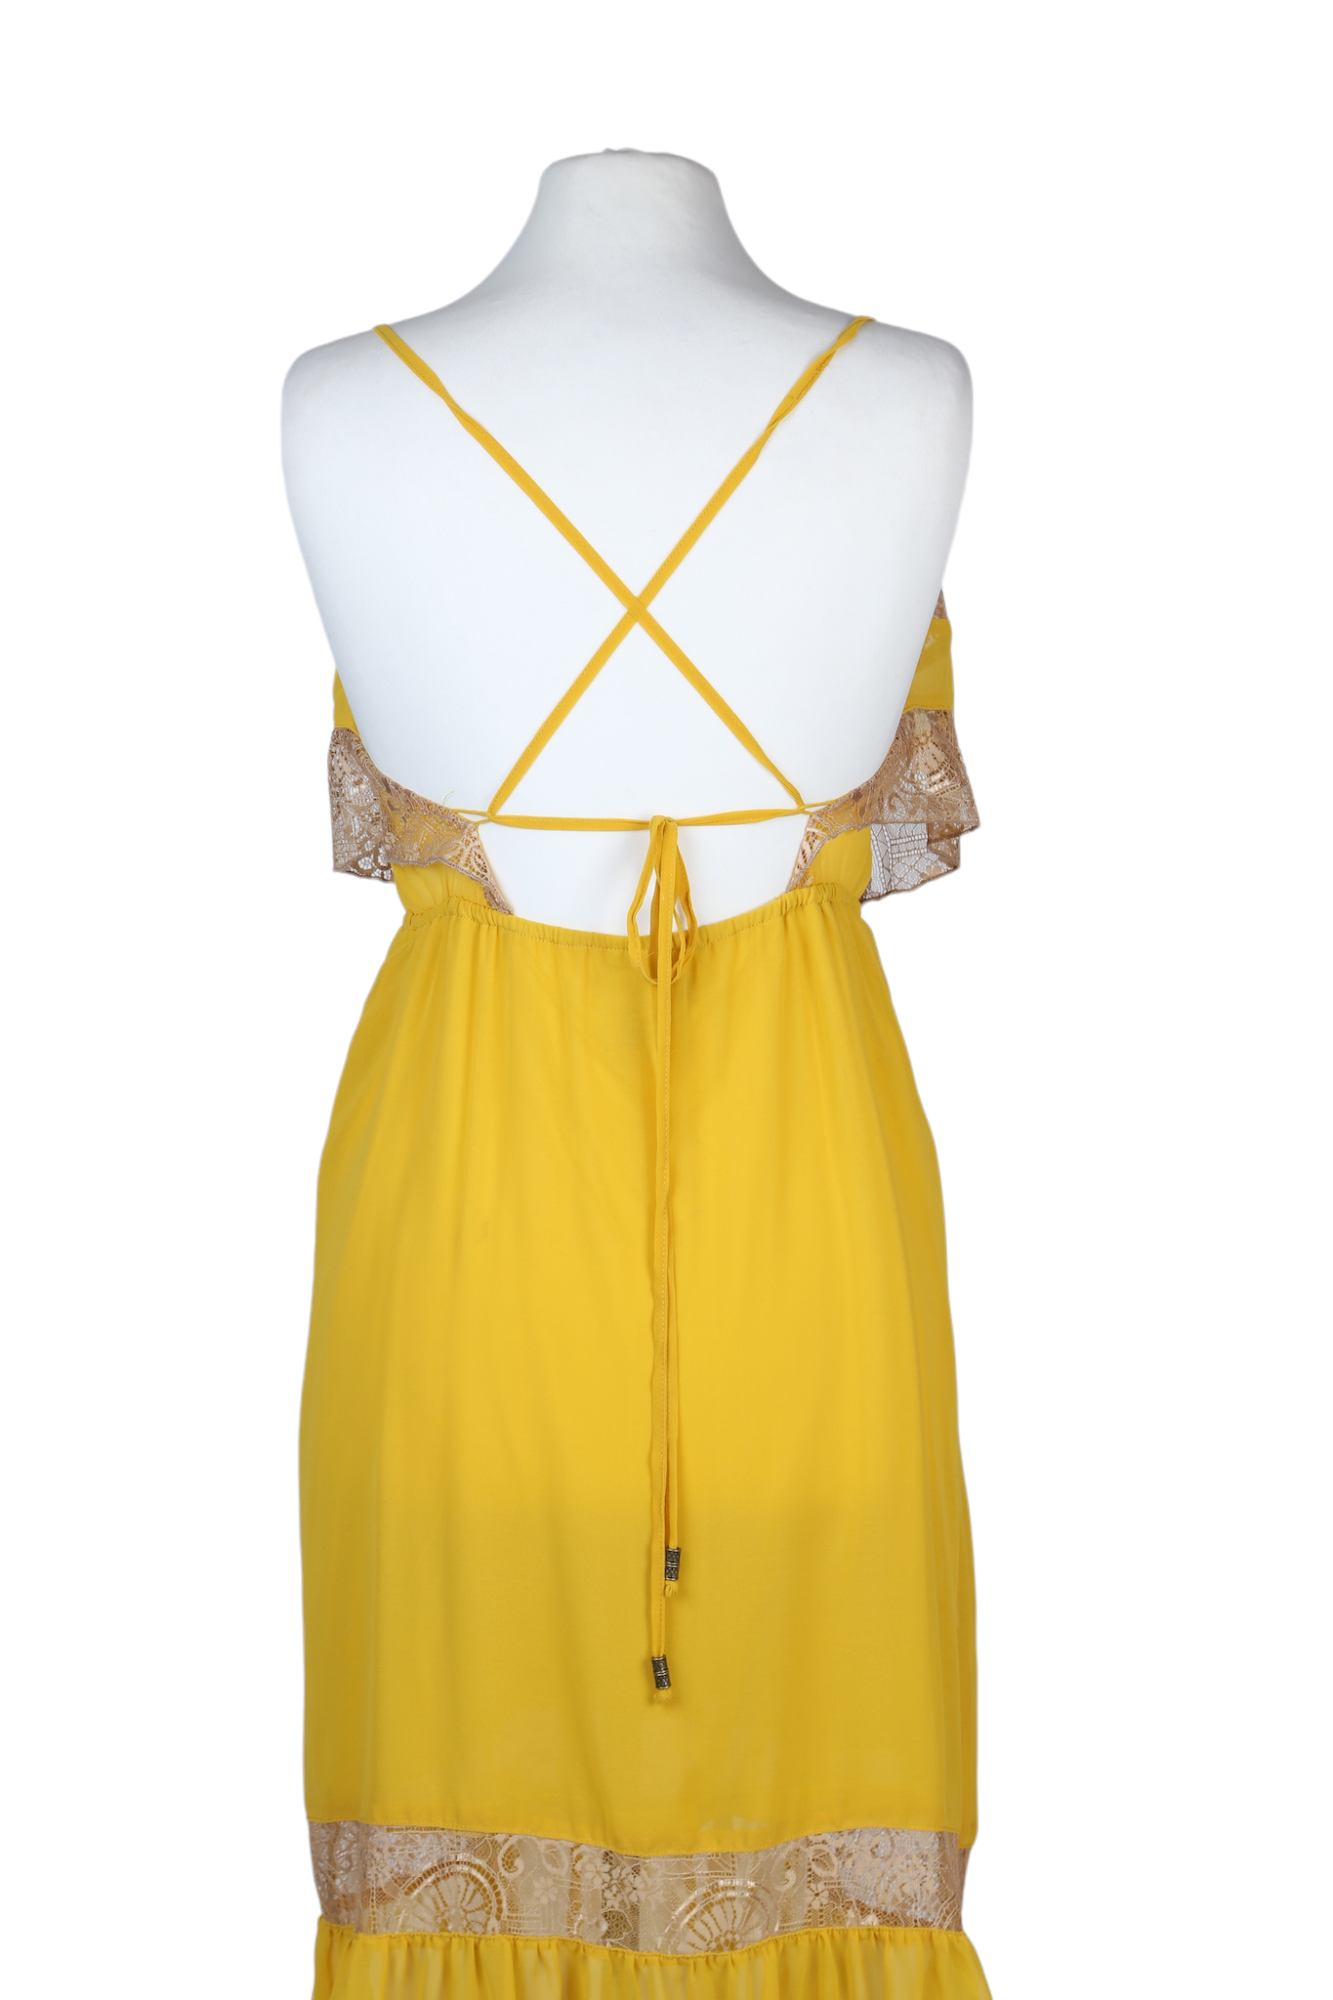 فستان متوسط الطول باللون الأصفر من متجر فلاينق توماتو